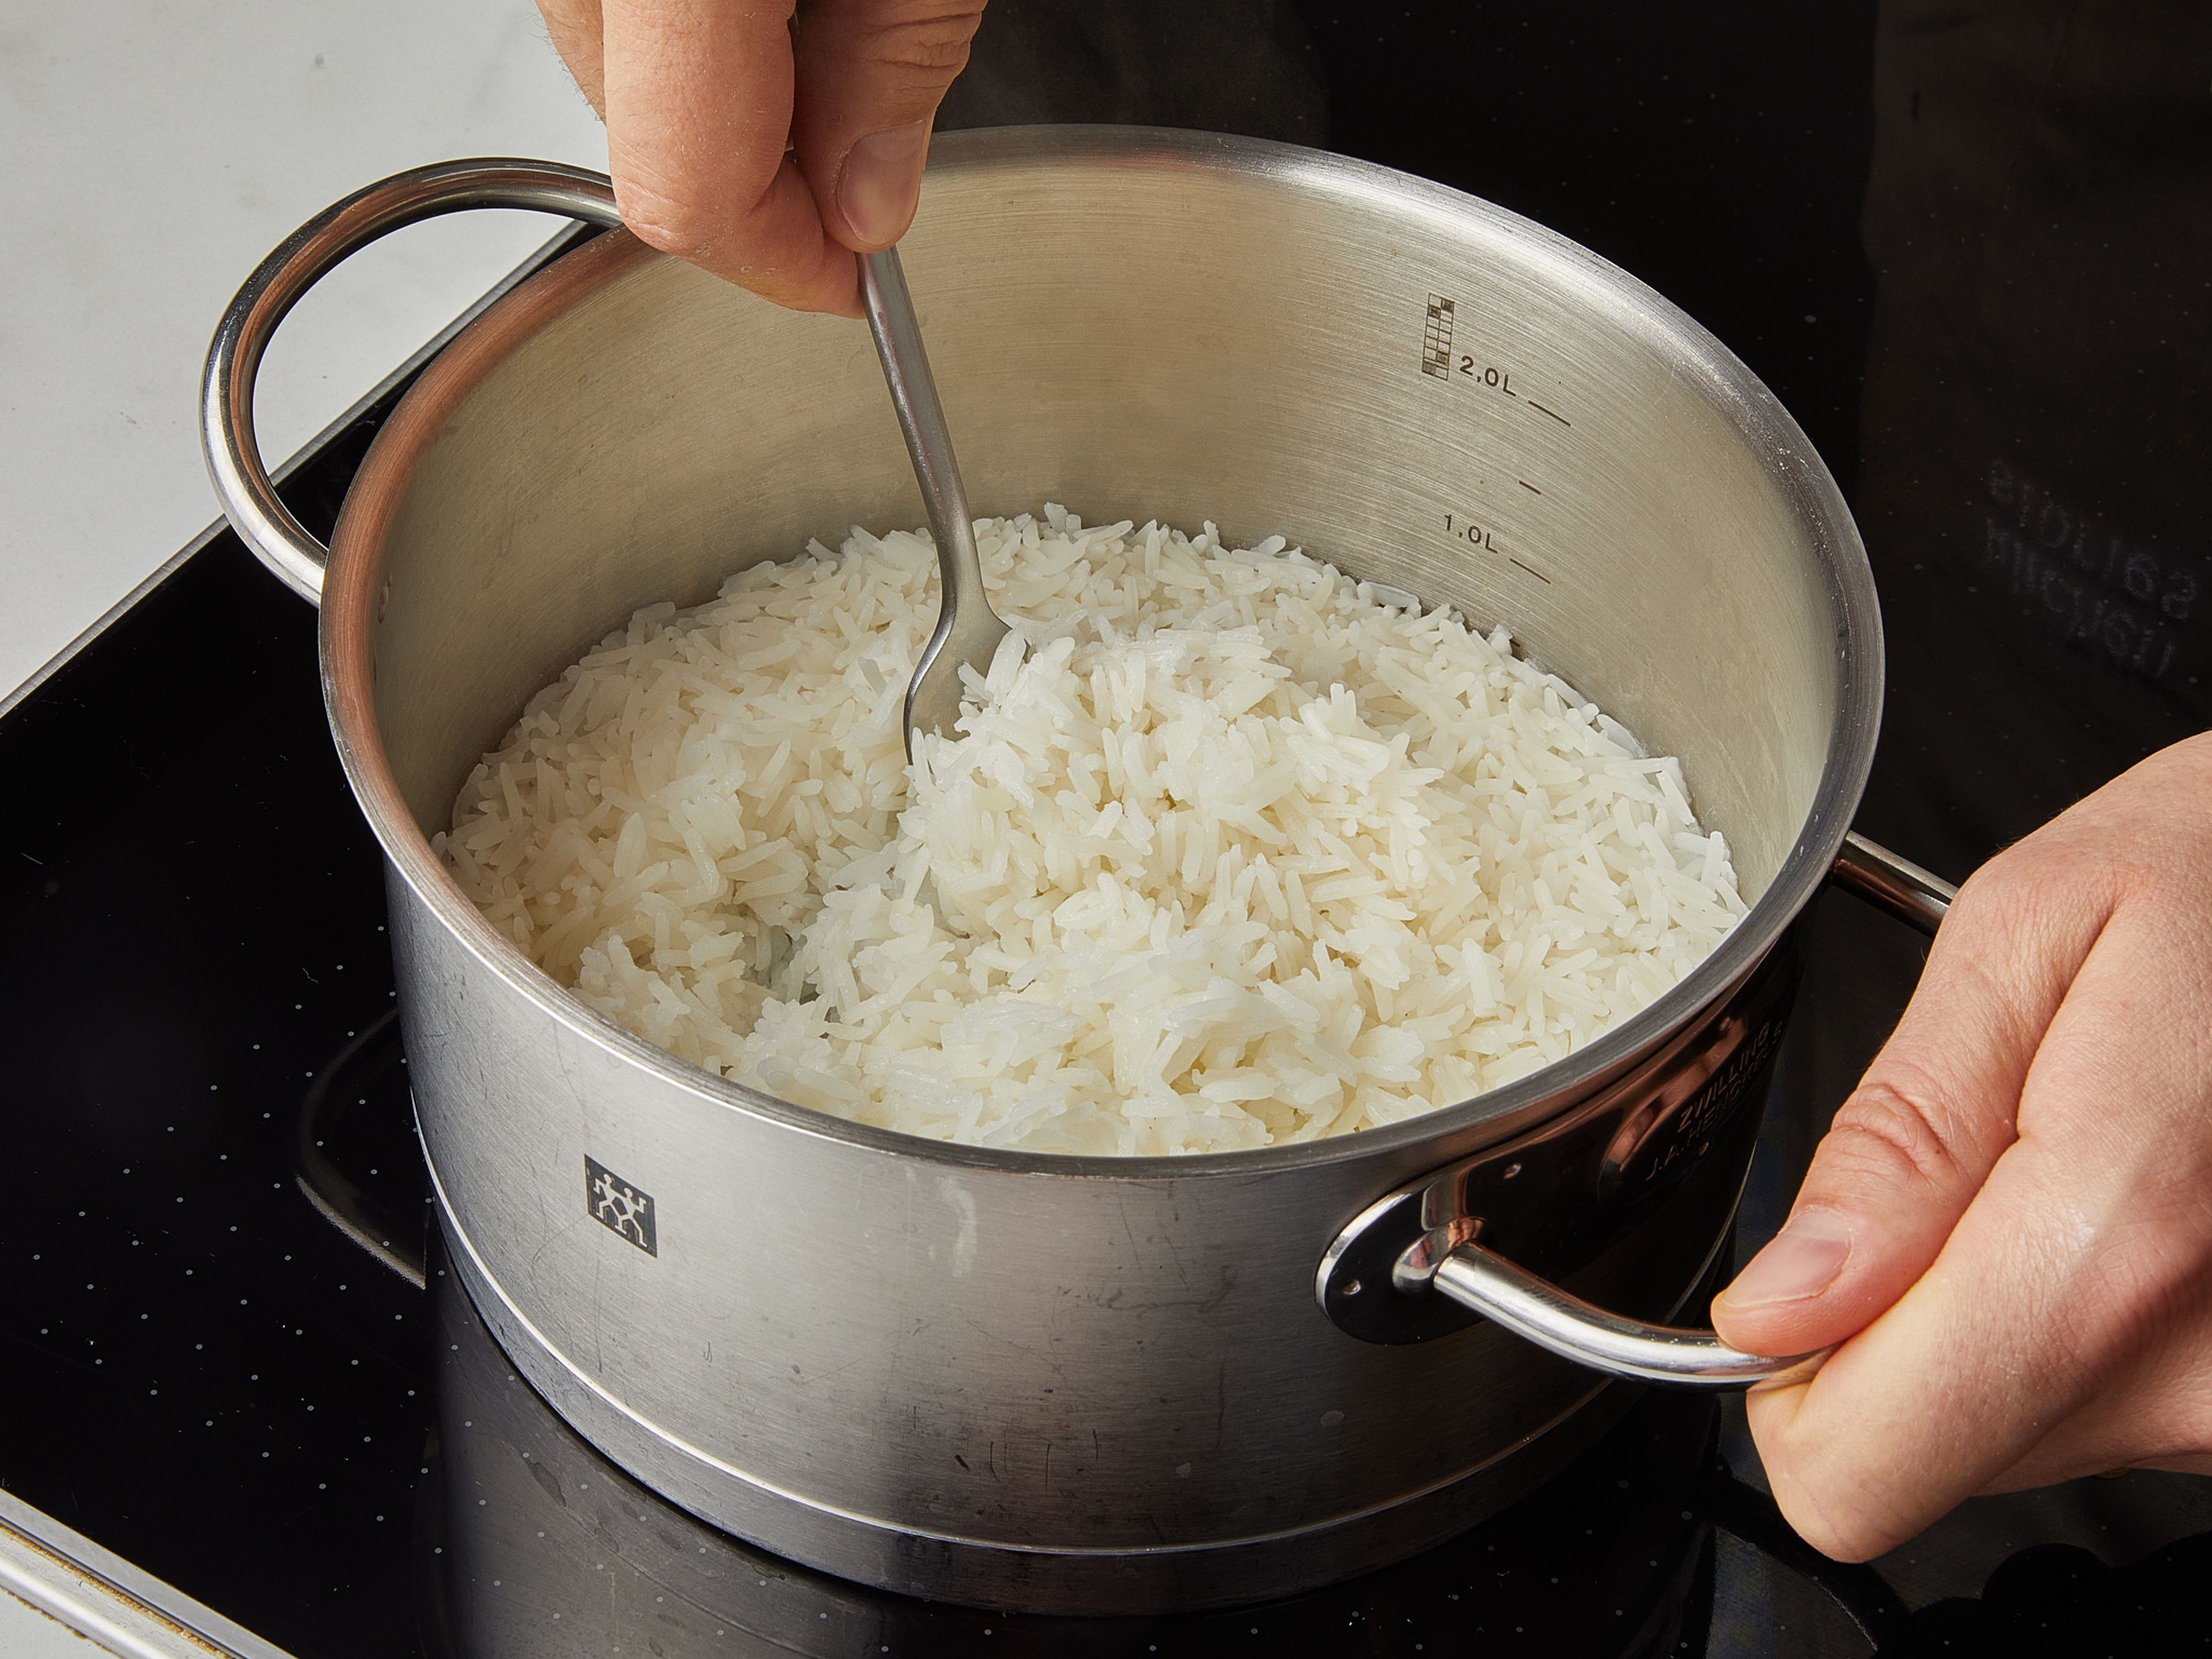 Wenn die Eier fertig sind, den Jasminreis unter Wasser abspülen, bis das Wasser klar ist. Dann in einen Topf mit Deckel geben. Wasser hinzufügen, abdecken und zum Kochen bringen. Sobald der Reis kocht, die Hitze auf niedrige Stufe reduzieren und ca. 10 Min. kochen. Dann den Herd ausschalten und weitere ca. 5 Min. dämpfen lassen. Je 2 Eier auf eine Schüssel gekochten Reis geben und ca. 2 EL Marinade als Soße über den Reis schöpfen. Mit geröstetem Sesam und Frühlingszwiebeln garnieren.